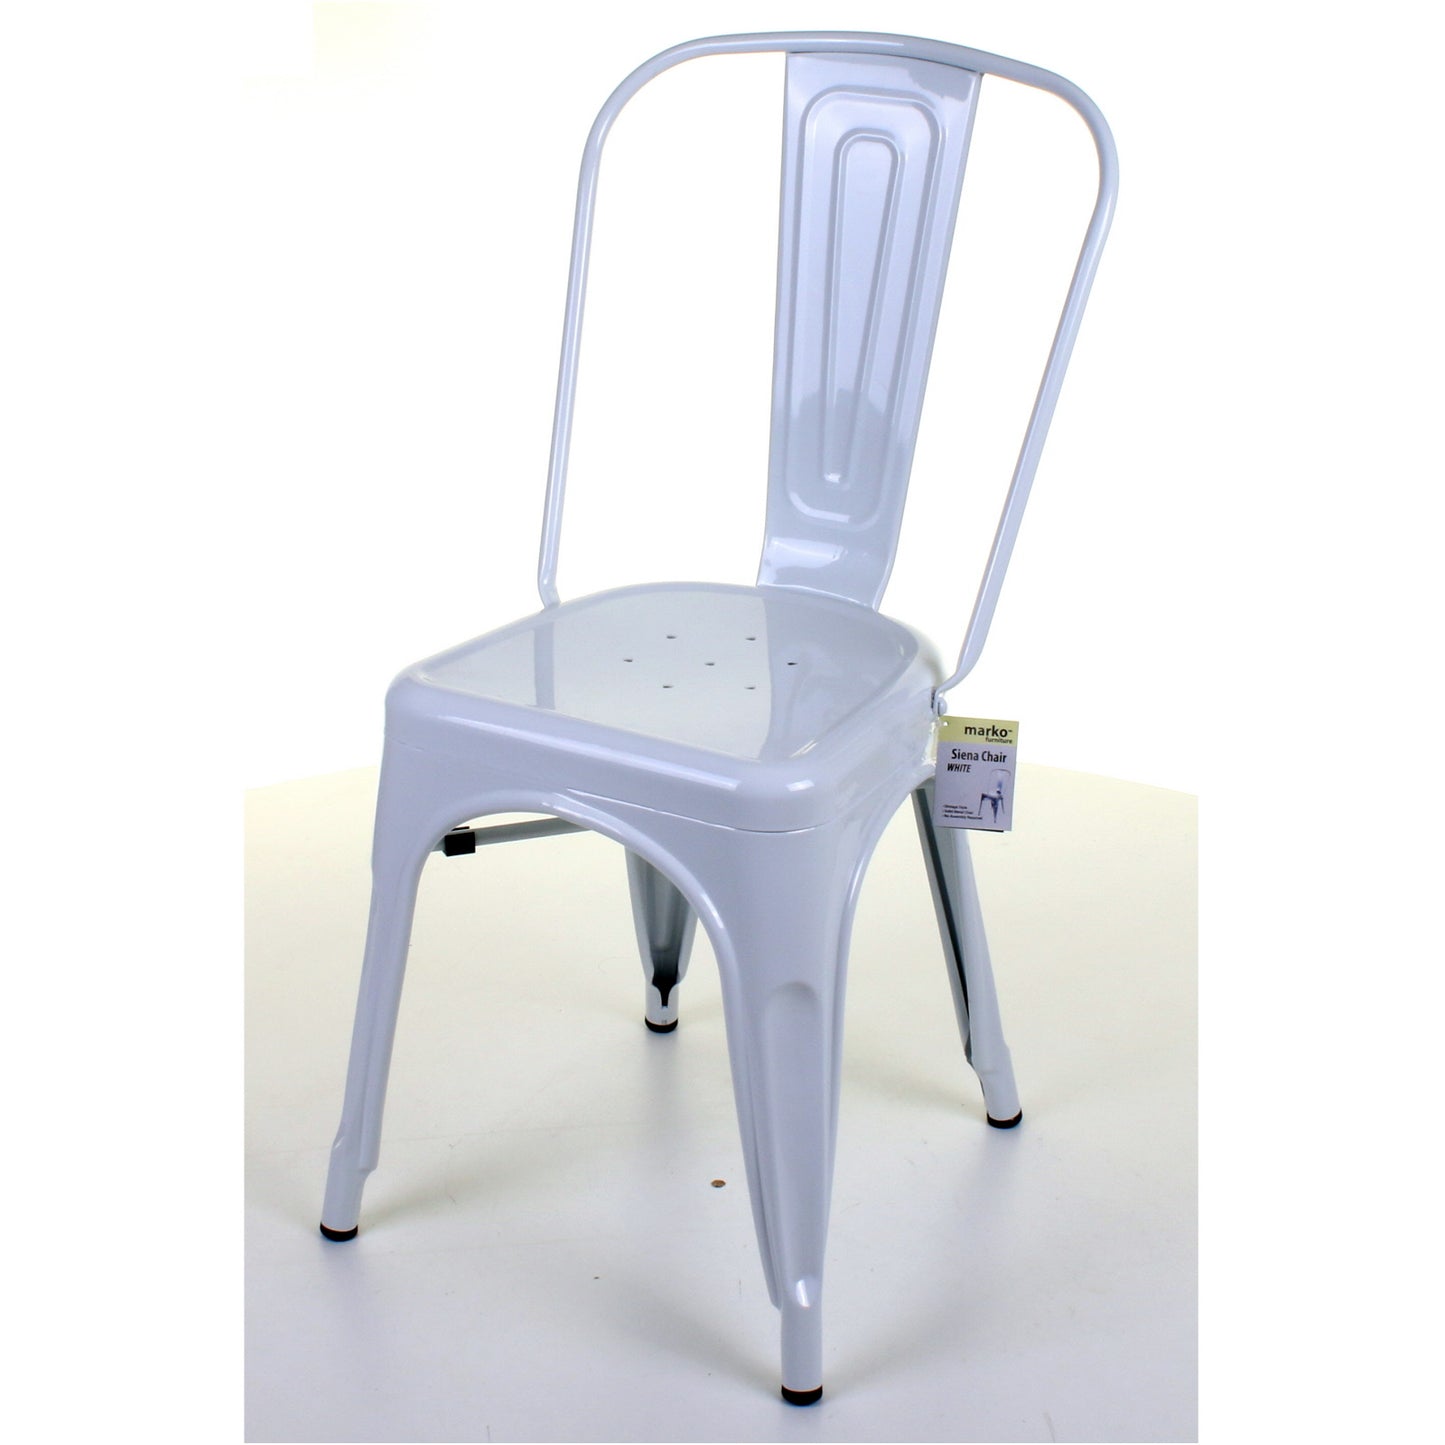 7PC Taranto Table, 3 Siena Chairs & 3 Castel Stools Set - White